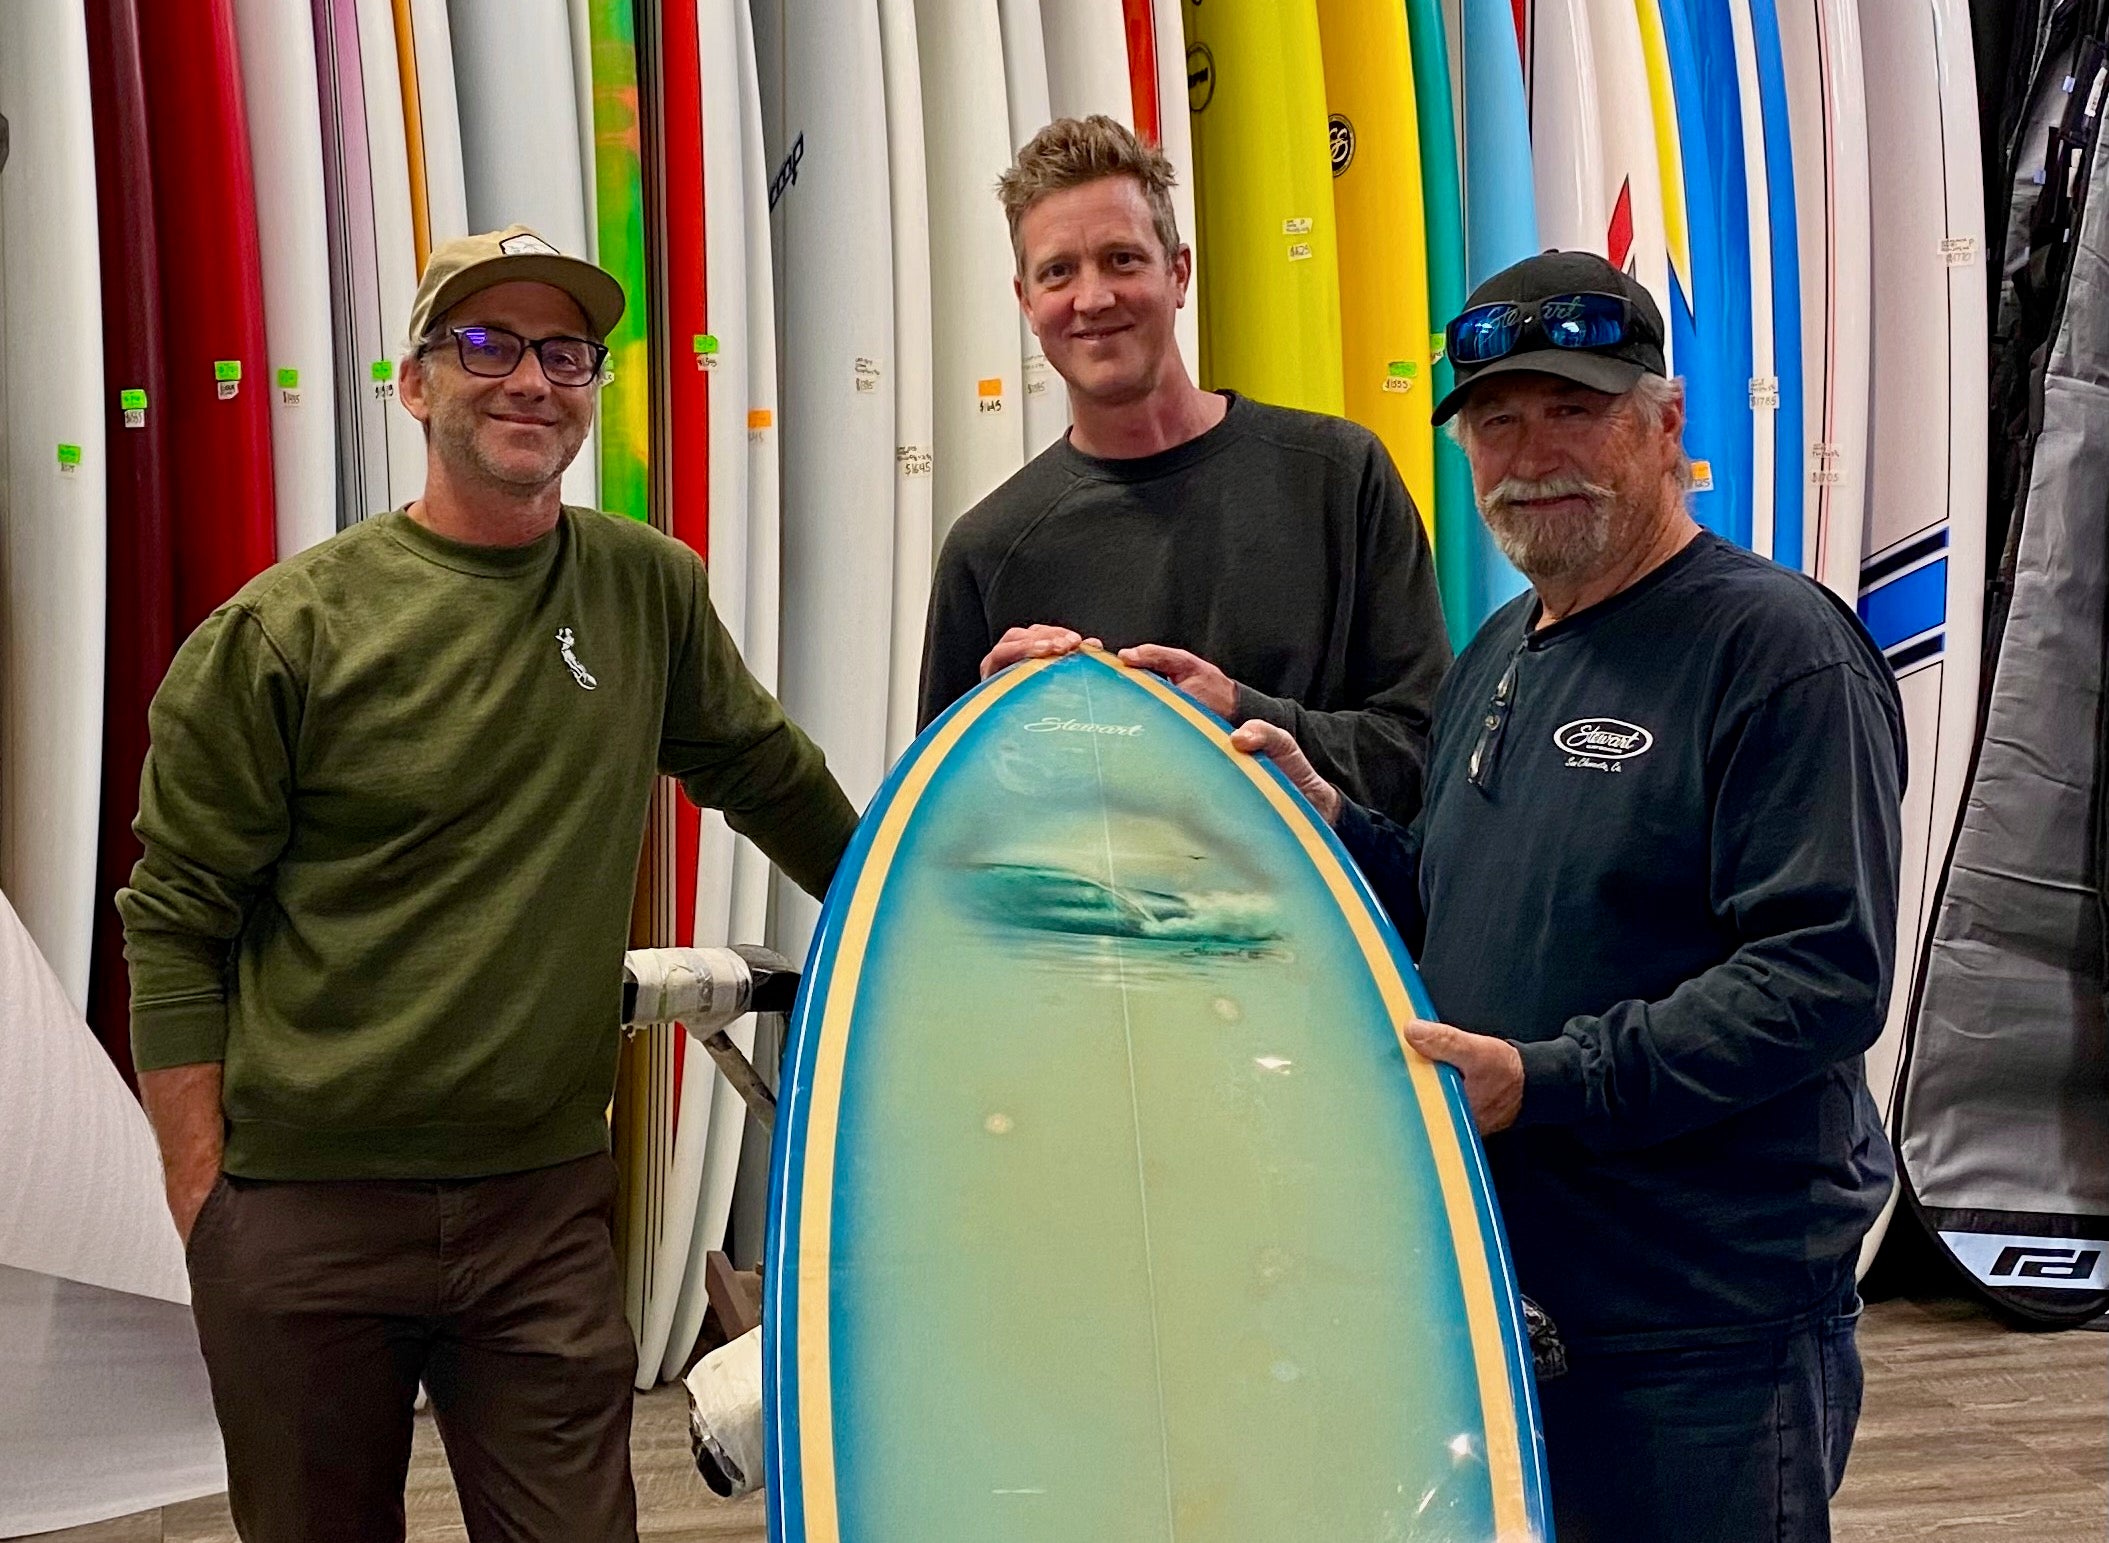 Benji Severson, Dan Severson, and Bill Stewart standing with an 80's twin fin surfboard